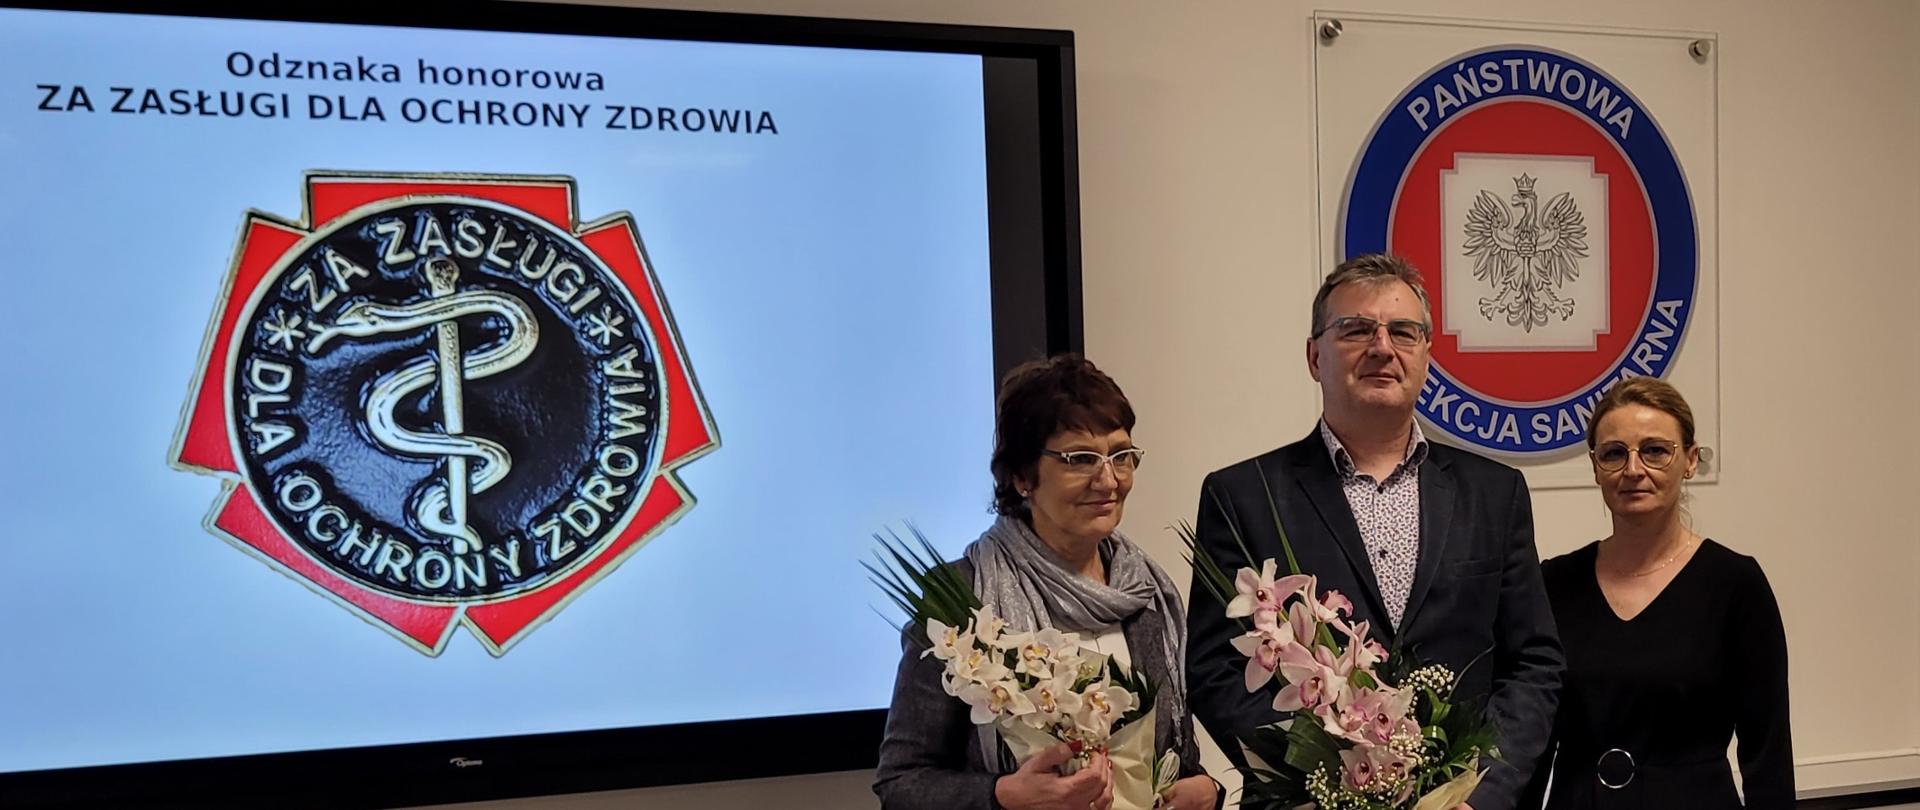 Uroczystość wręczenia odznak honorowych "Za zasługi dla ochrony zdrowia" pracownikom Państwowej Inspekcji Sanitarnej województwa mazowieckiego